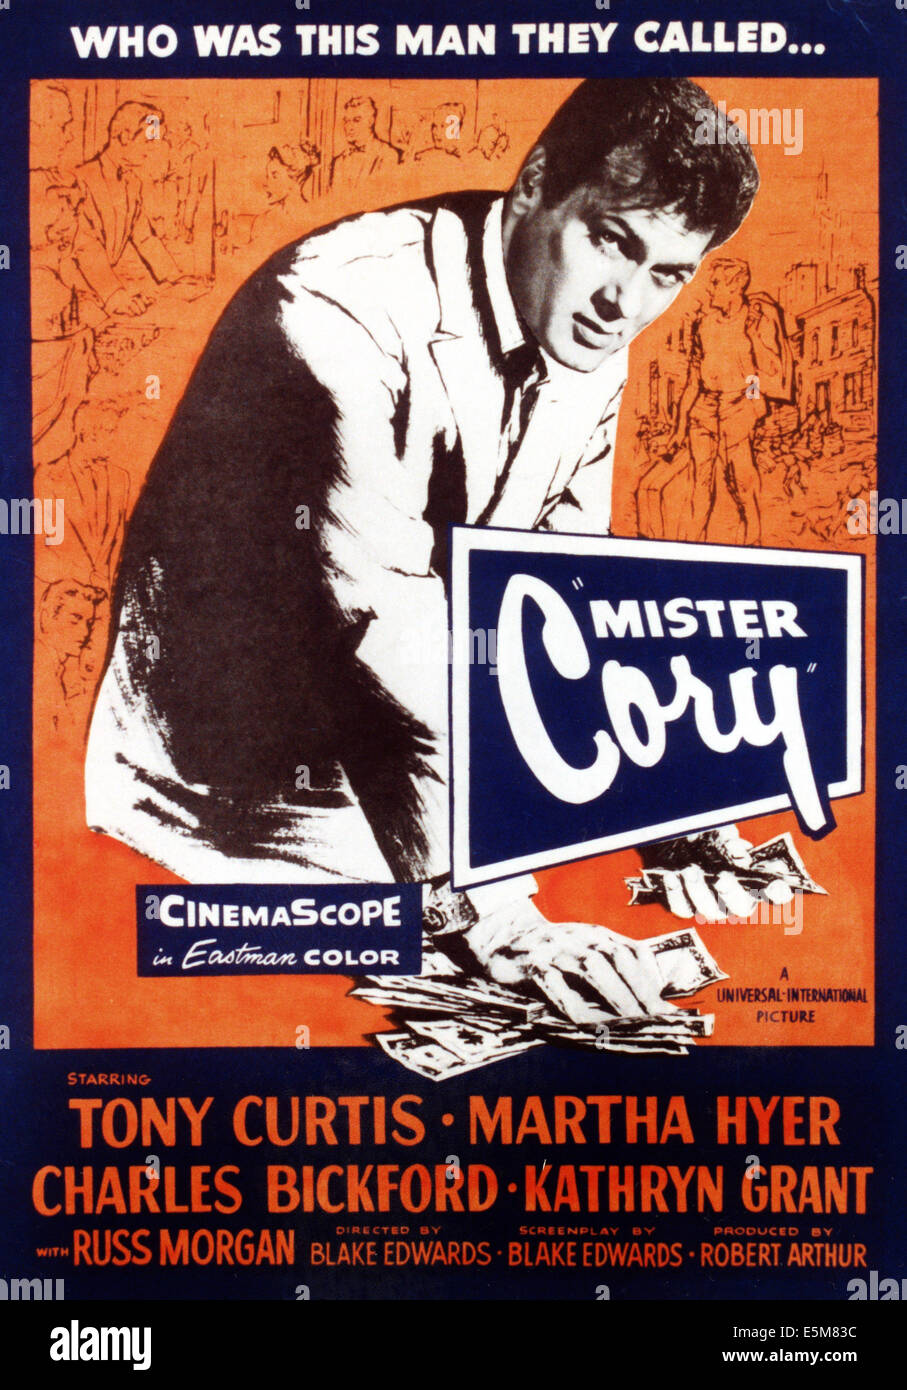 MISTER CORY, Tony Curtis, 1957 Stock Photo